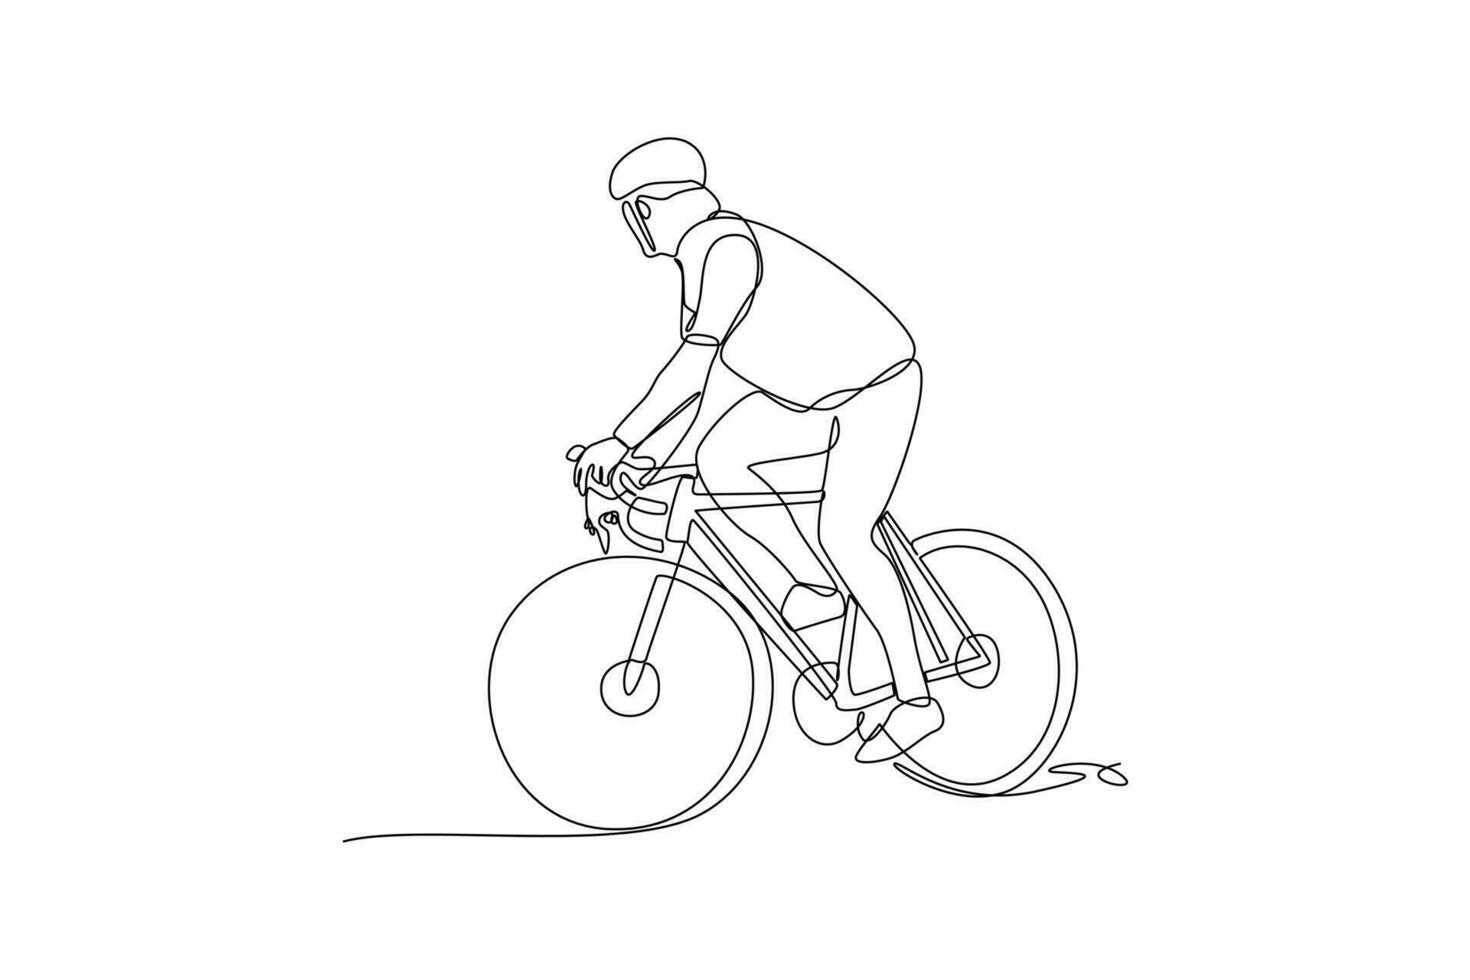 enda ett linje teckning värld cykel dag på juni 3. värld cykel dag begrepp. kontinuerlig linje dra design grafisk vektor illustration.